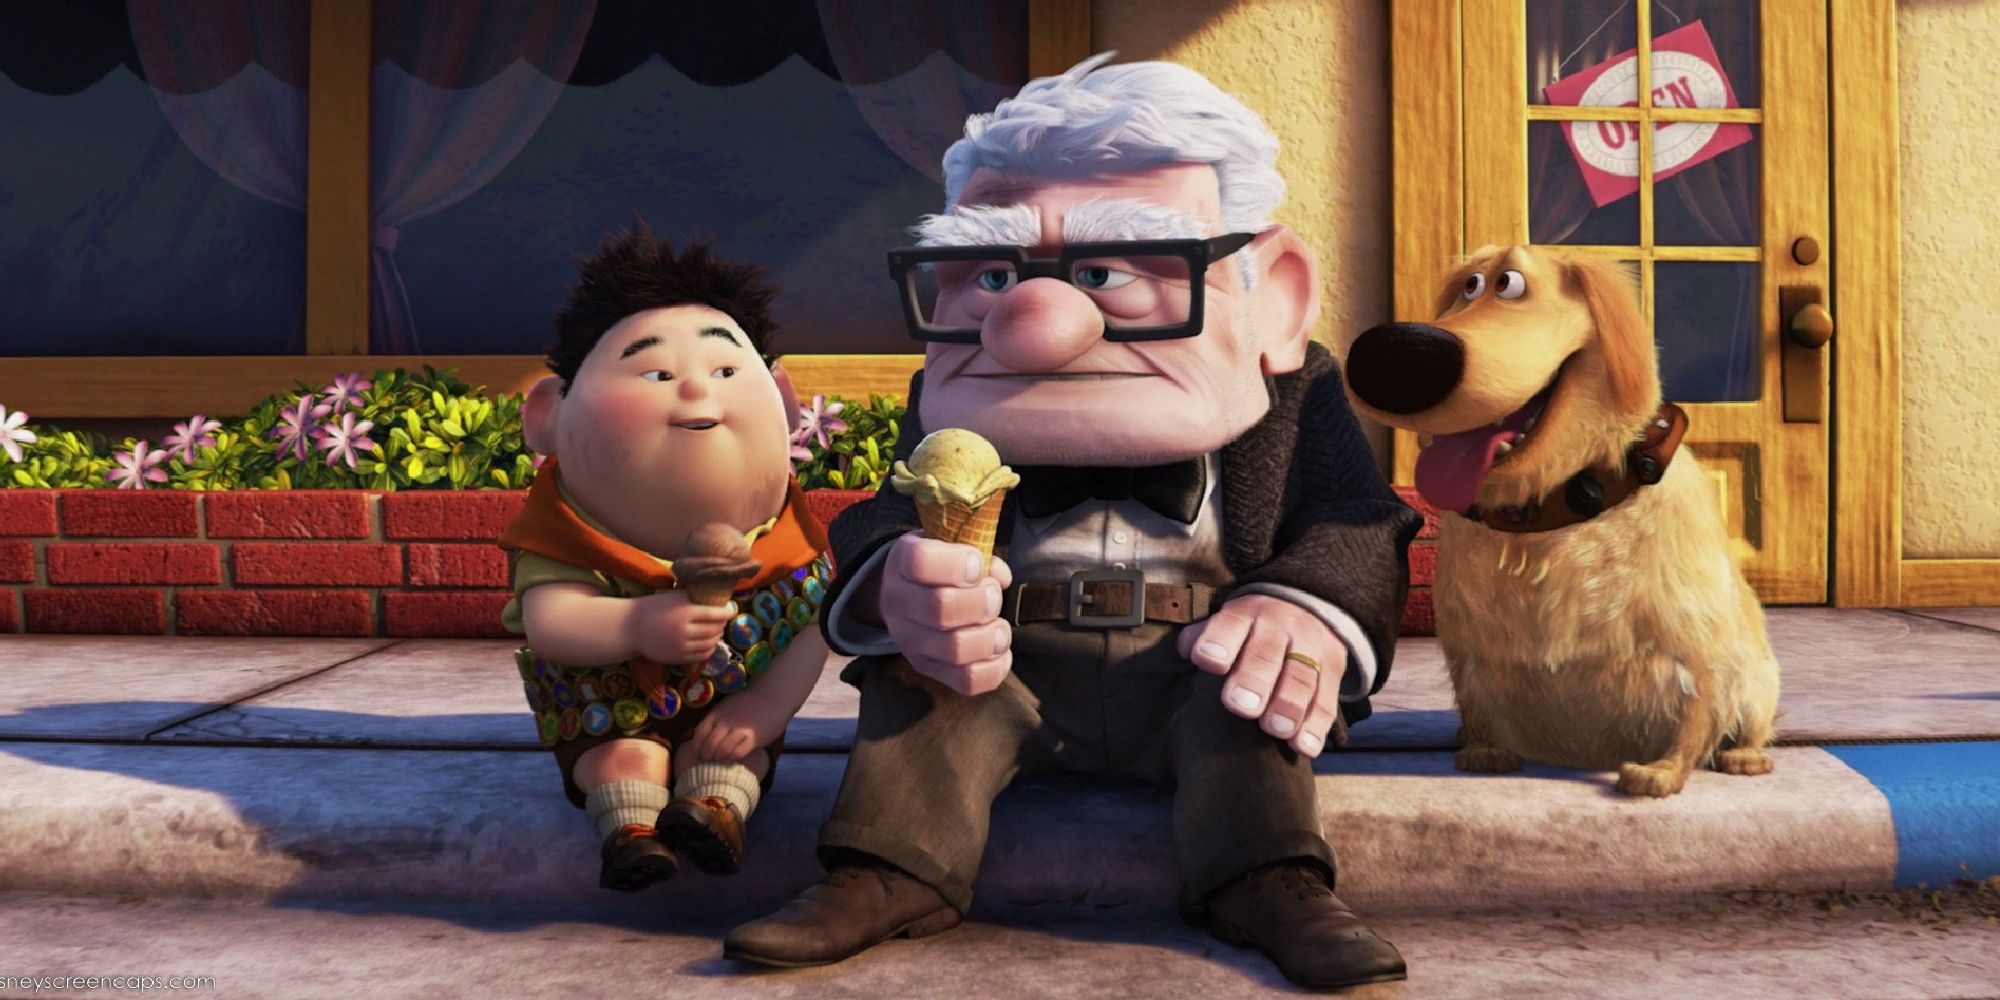 Carl mange une glace avec Russell et creuse à la fin